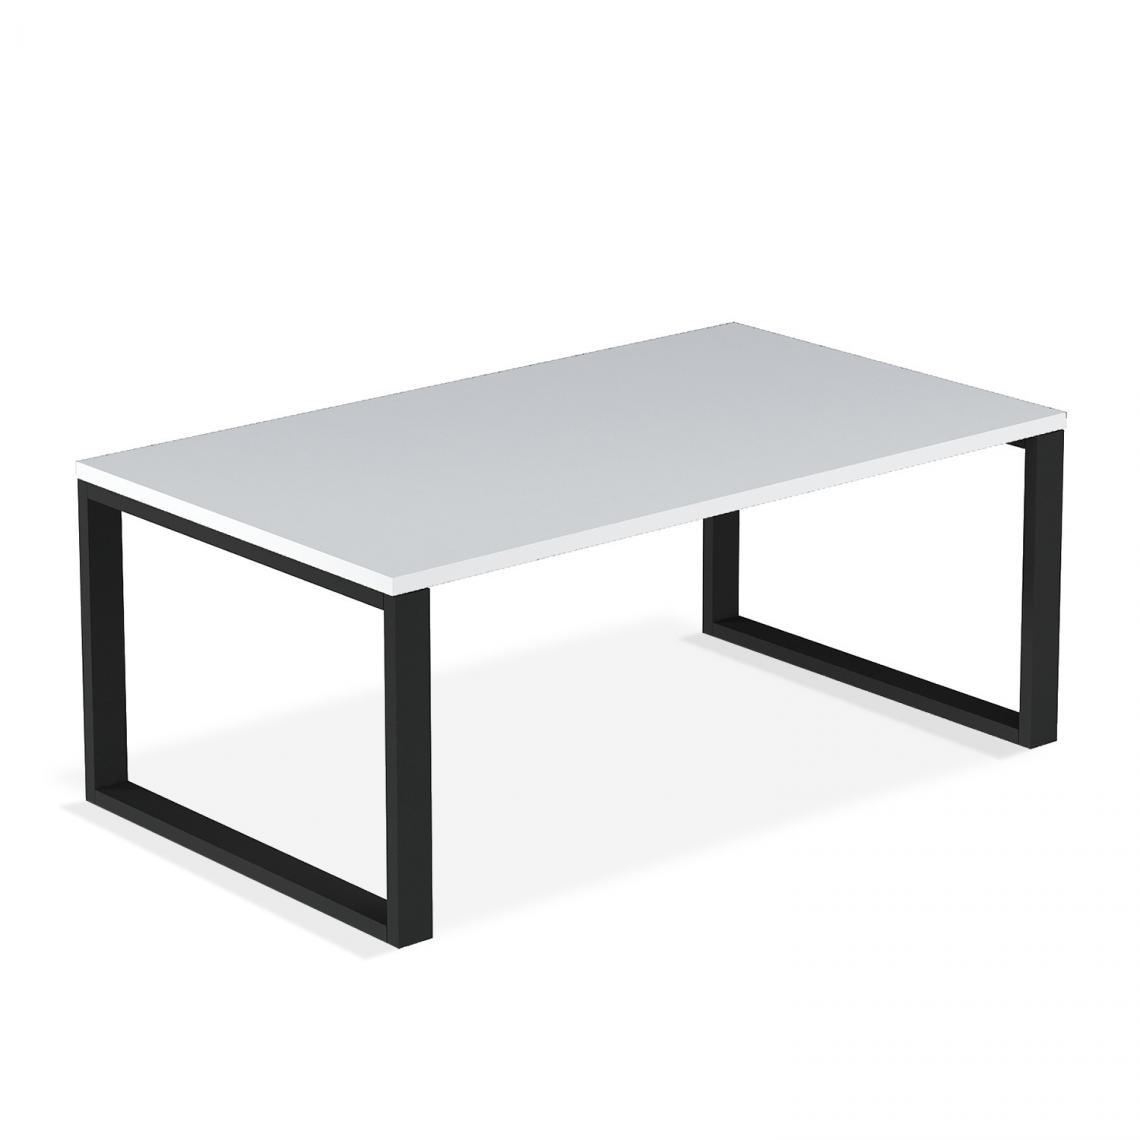 marque generique - Table basse de style industriel Ava Blanc mat - Tables à manger